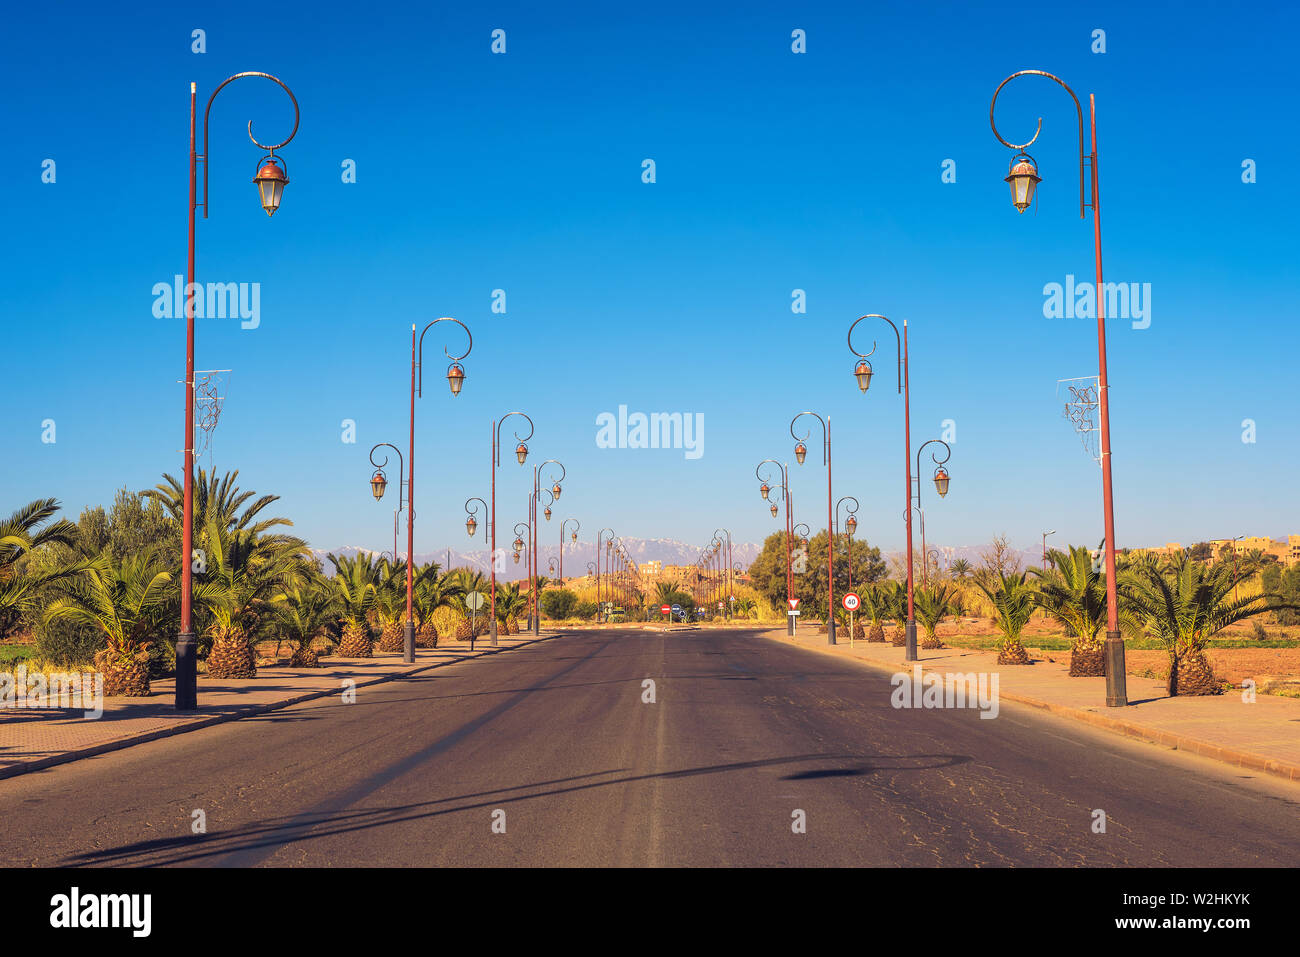 Route avec rangée de lampadaires de style dans le centre de Ouarzazate, Maroc Banque D'Images